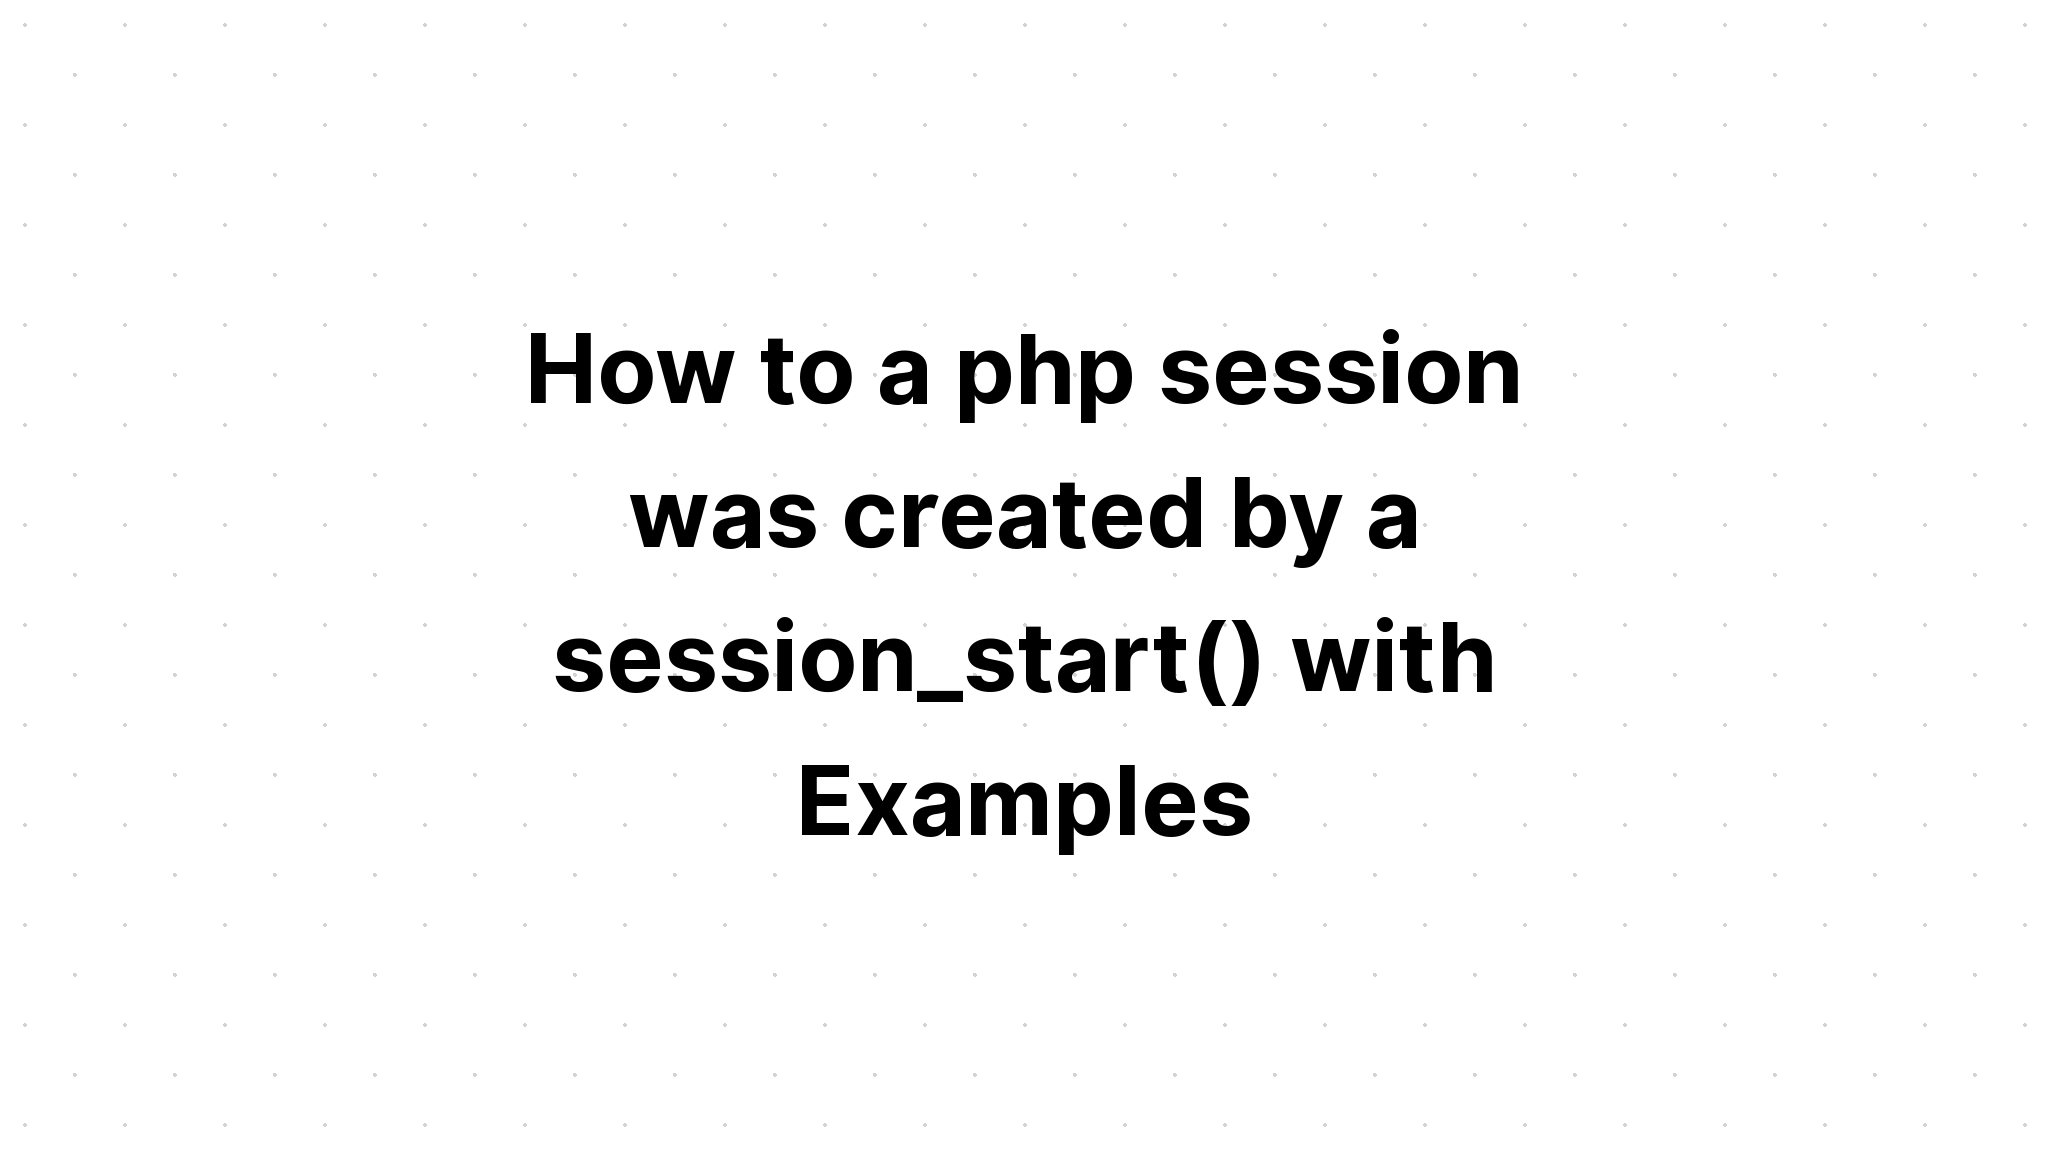 Cách phiên php được tạo bởi session_start() với các ví dụ